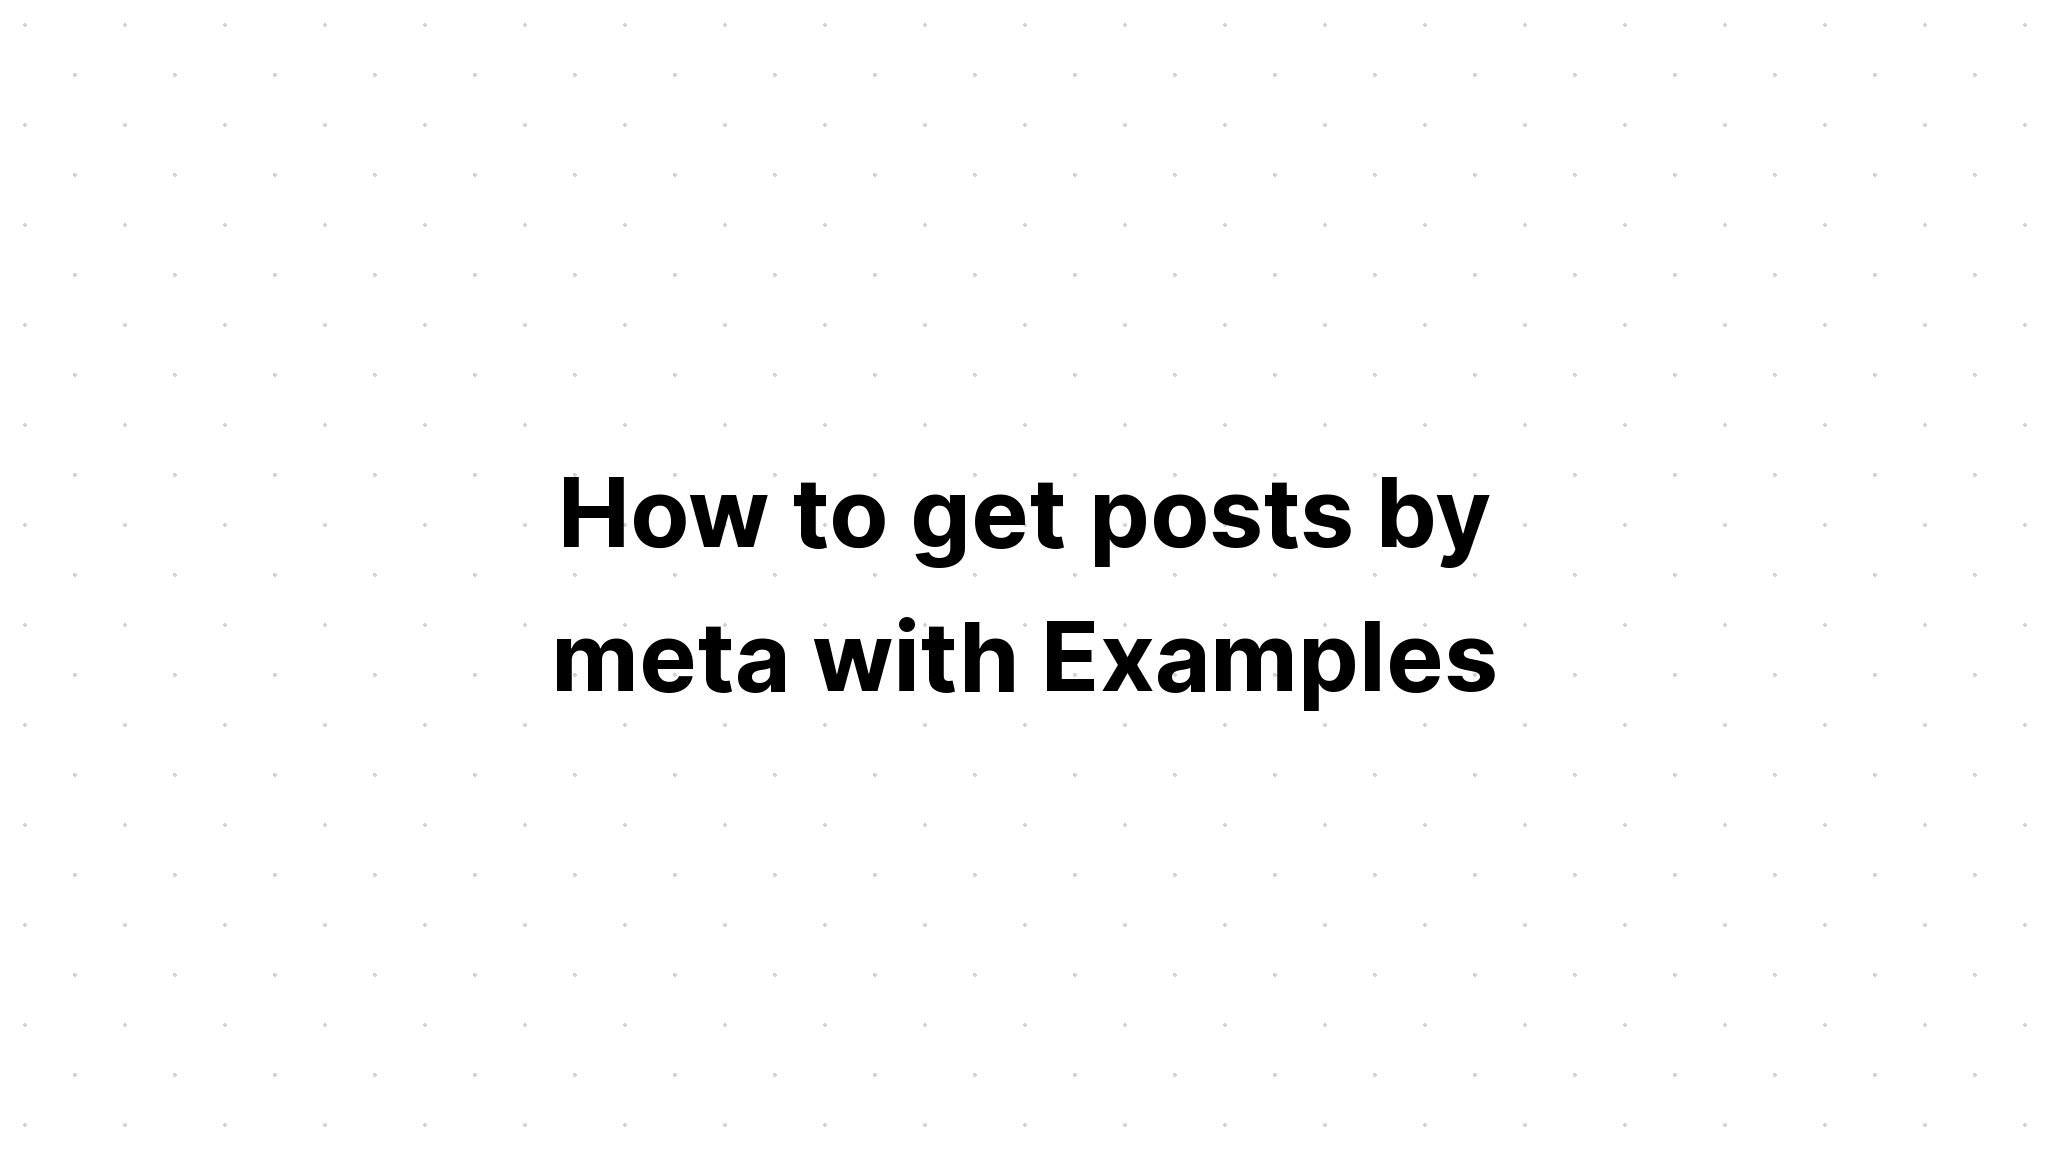 Cara mendapatkan posting dengan meta dengan Contoh